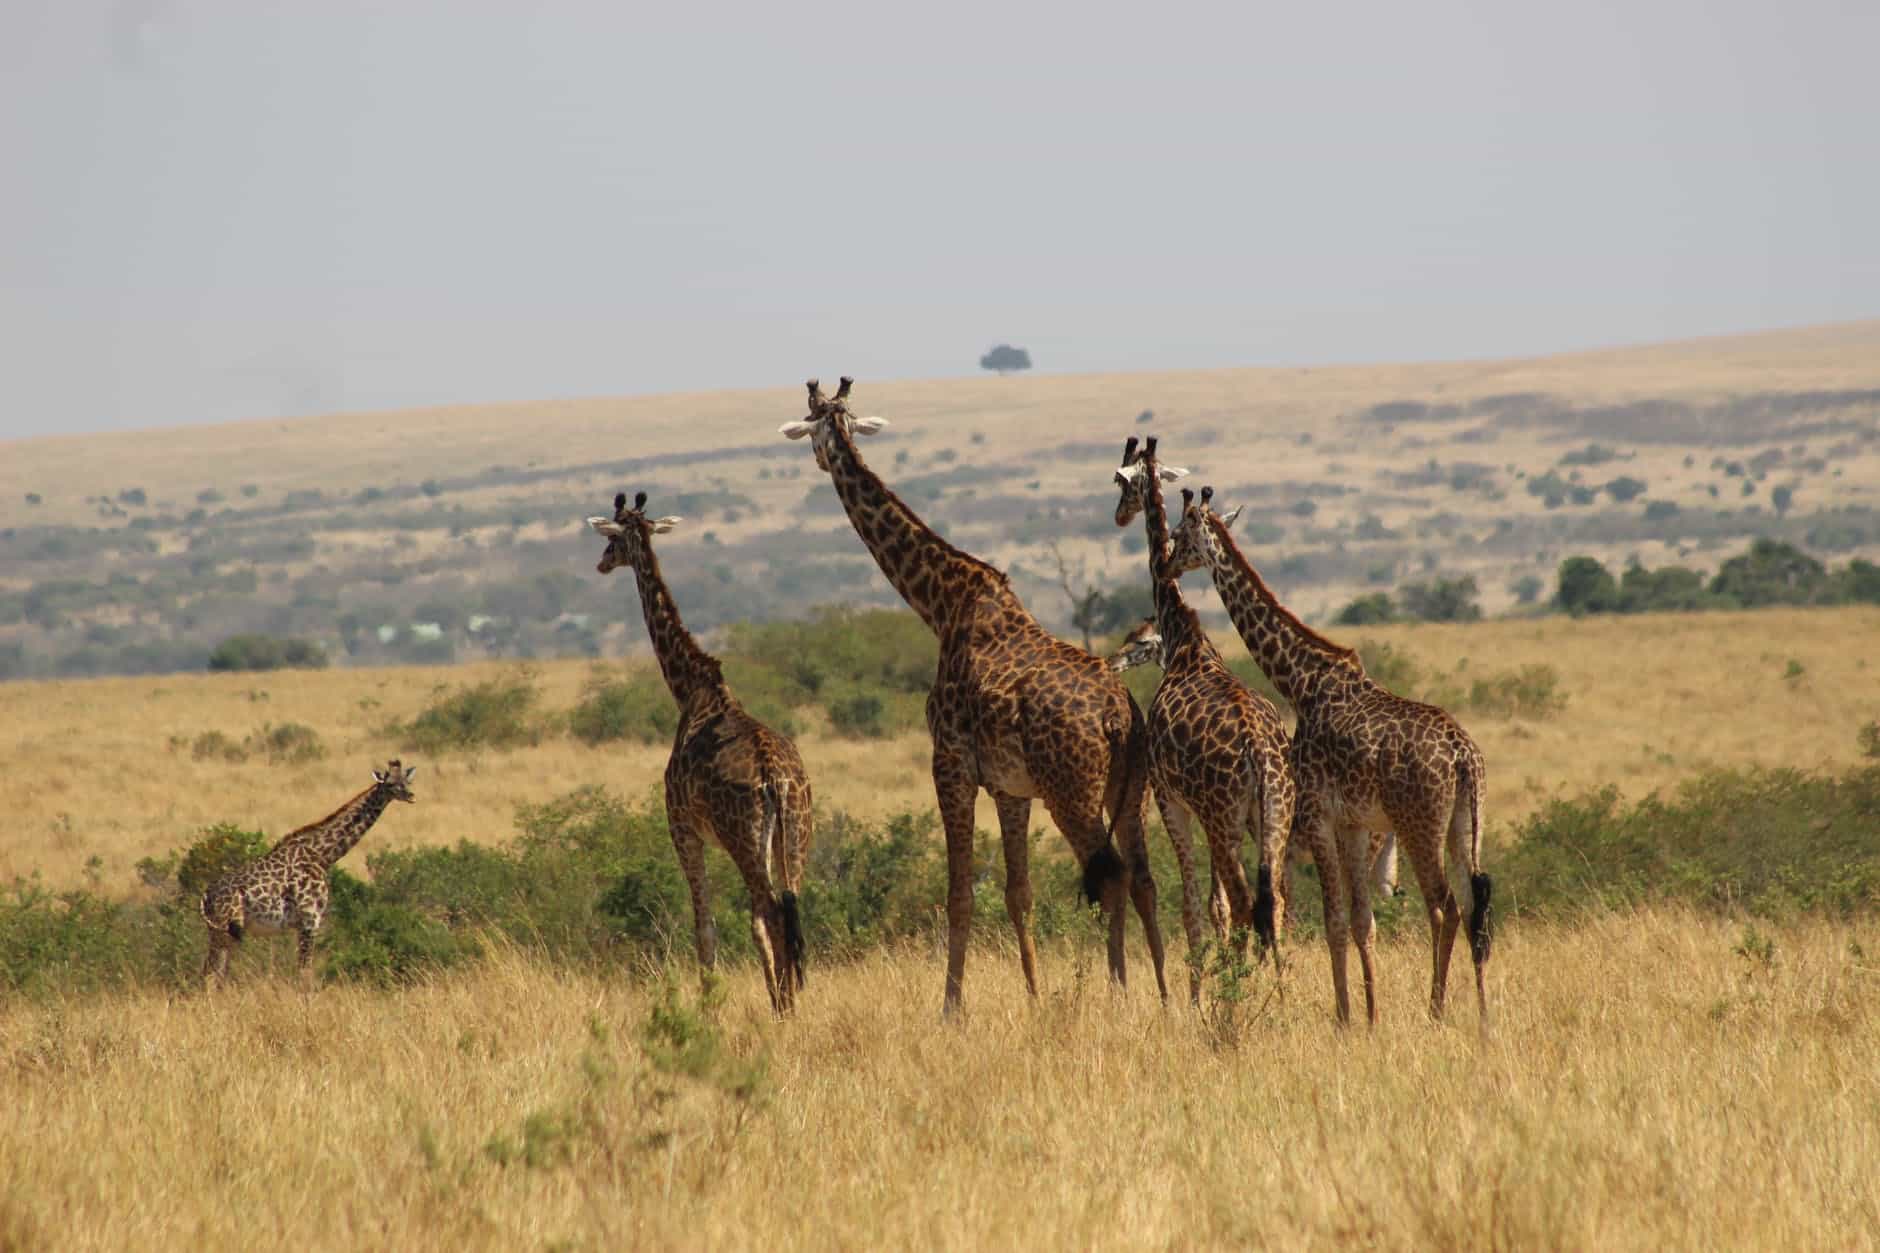 Kenia ist ein Land voller Abenteuer und wunderschöner Landschaften. Wenn du auf der Suche nach einem unvergesslichen Urlaubserlebnis bist, ist Kenia die perfekte Wahl für dich. Hier findest du wunderschöne Strände und eine einzigartige Tierwelt, die du auf einer spannenden Safari erleben kannst. Aber das ist noch nicht alles, was Kenia zu bieten hat. Kenia ist ein sehr erschwingliches Reiseziel, was es ideal für Reisende mit kleinem Budget macht. Die Lebenshaltungskosten sind dort vergleichsweise niedrig, so dass du deinen Urlaub ganz unbeschwert genießen kannst. Und es gibt viele verschiedene Möglichkeiten, die afrikanische Kultur zu entdecken und die atemberaubende Natur zu erleben. Gut und günstig Urlaub machen in Kenia.